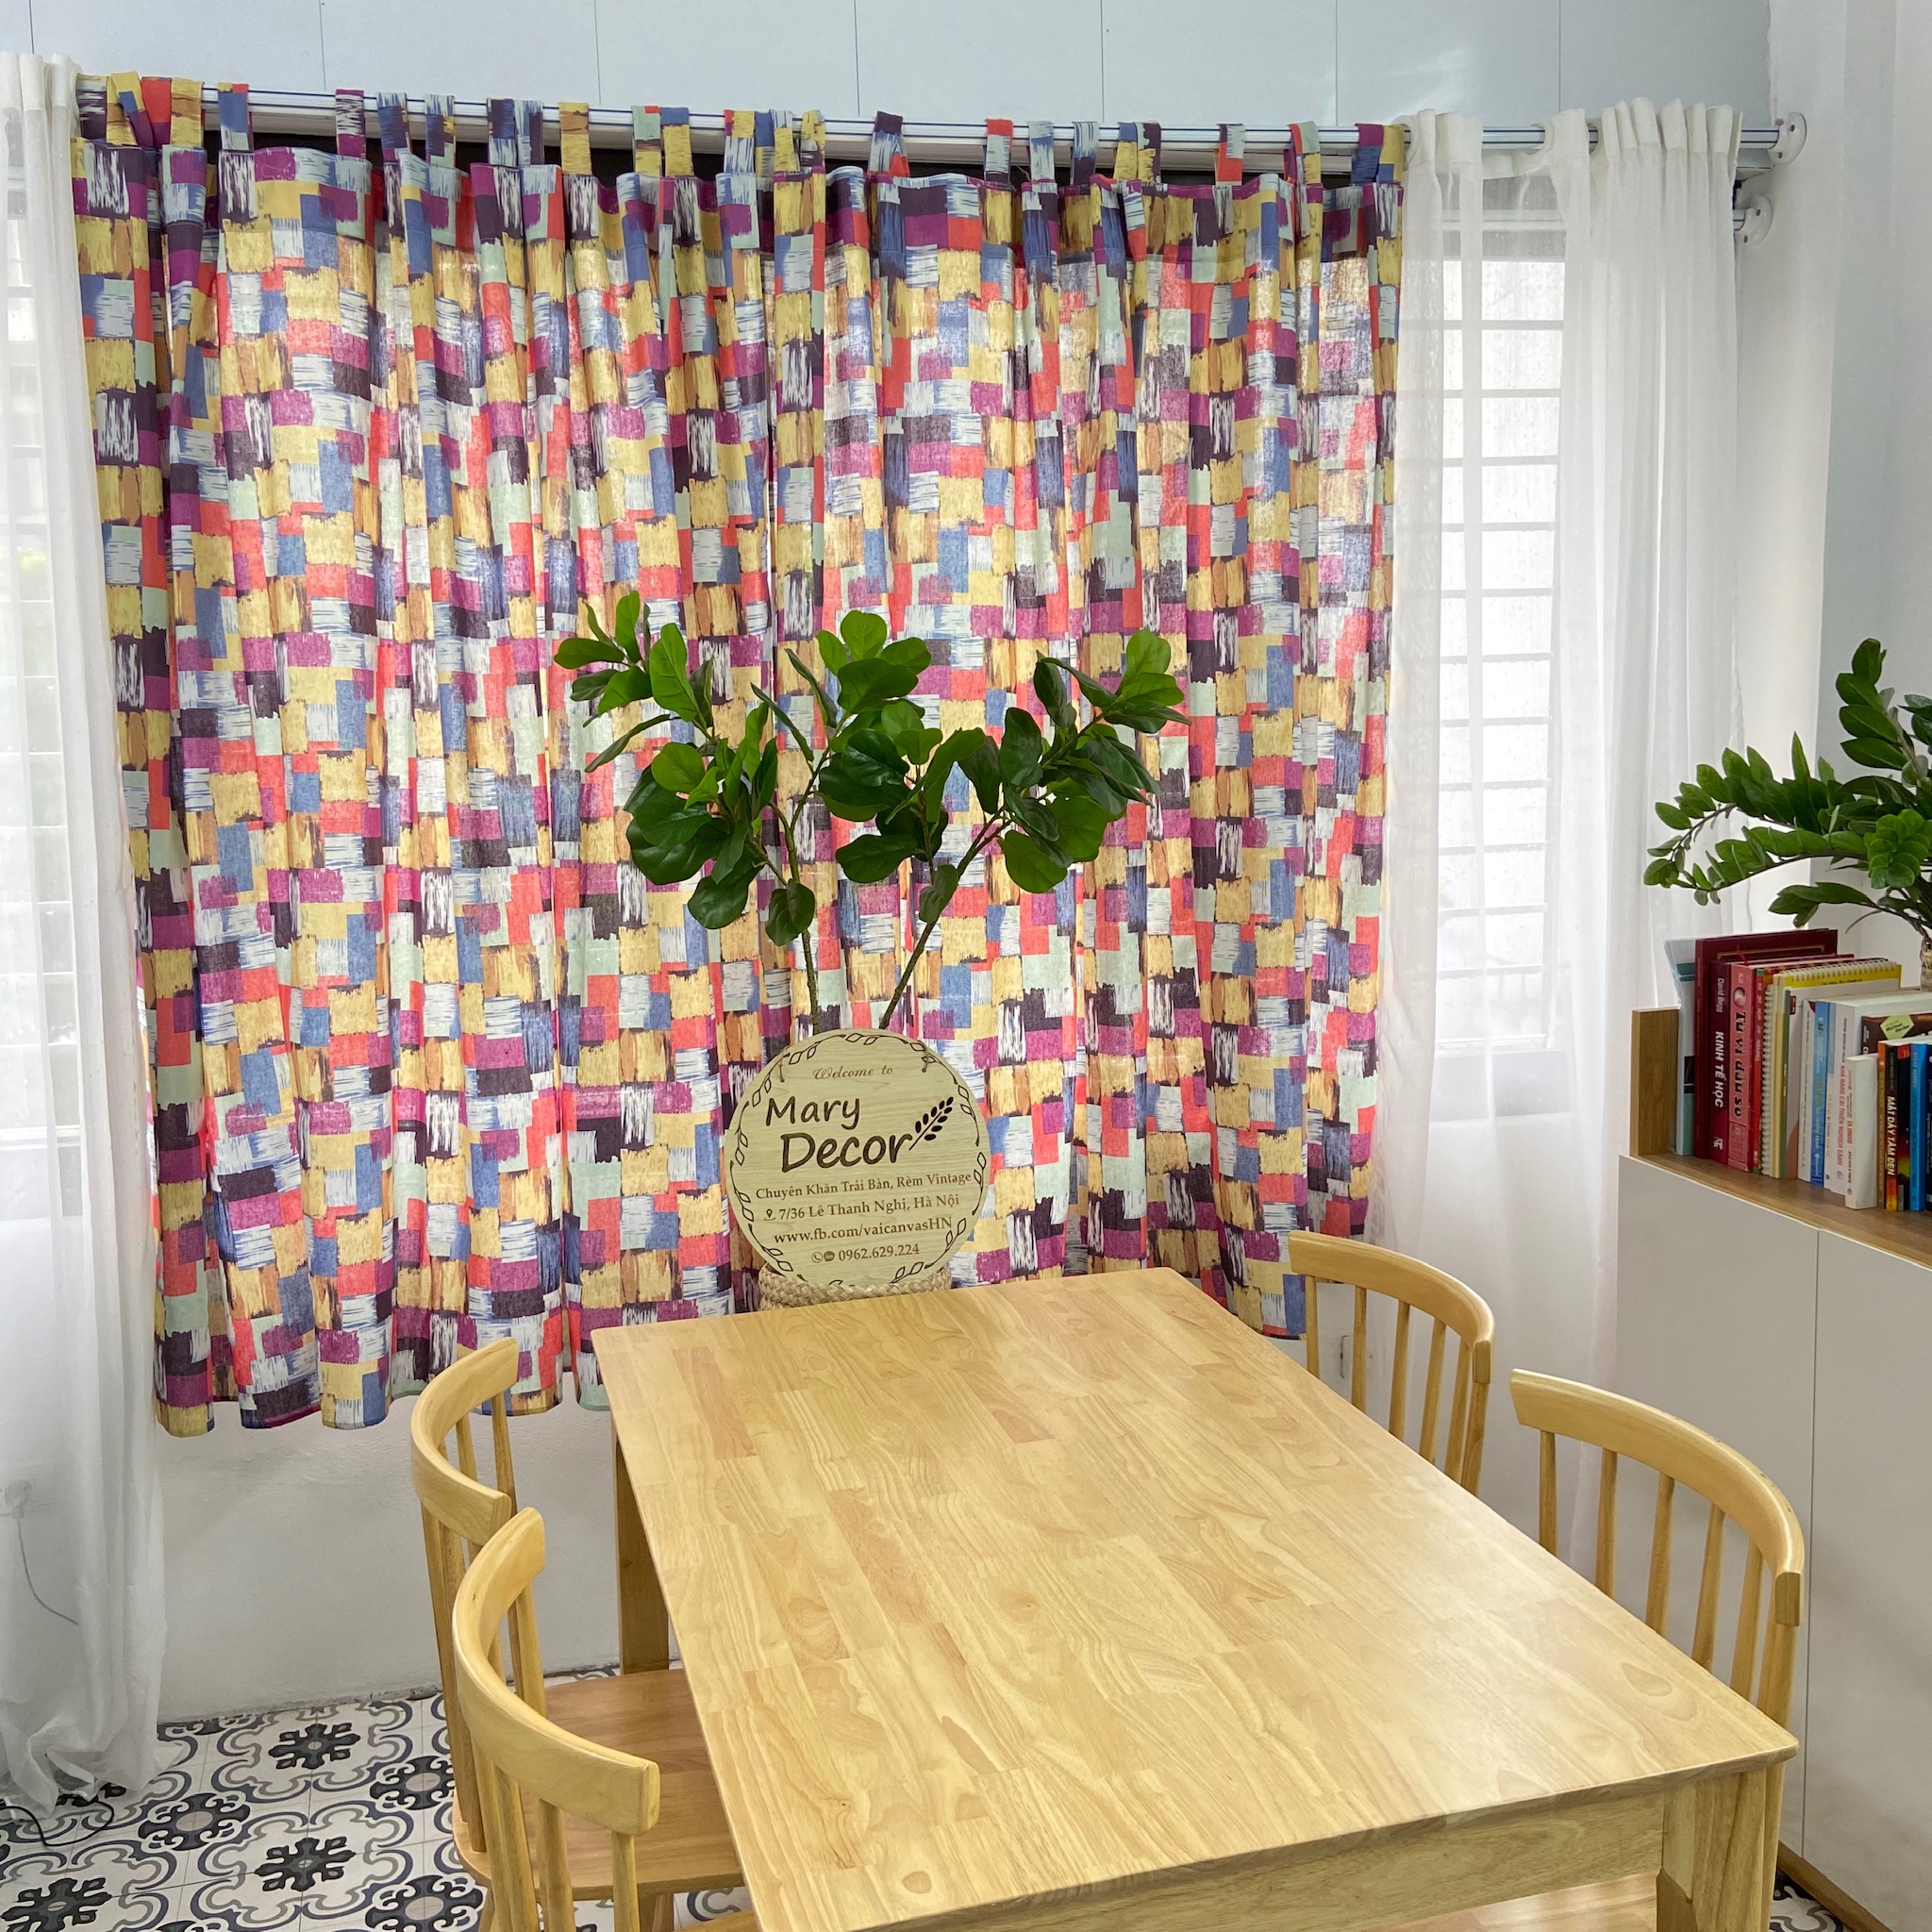 Rèm cửa sổ chống nắng decor MARYTEXCO trang trí nhà cửa, làm dịu nhẹ ánh sáng tự nhiên, rèm ore hoàn thiện tặng kèm dây buộc rèm vintage - họa tiết SẮC MÀU R-A05